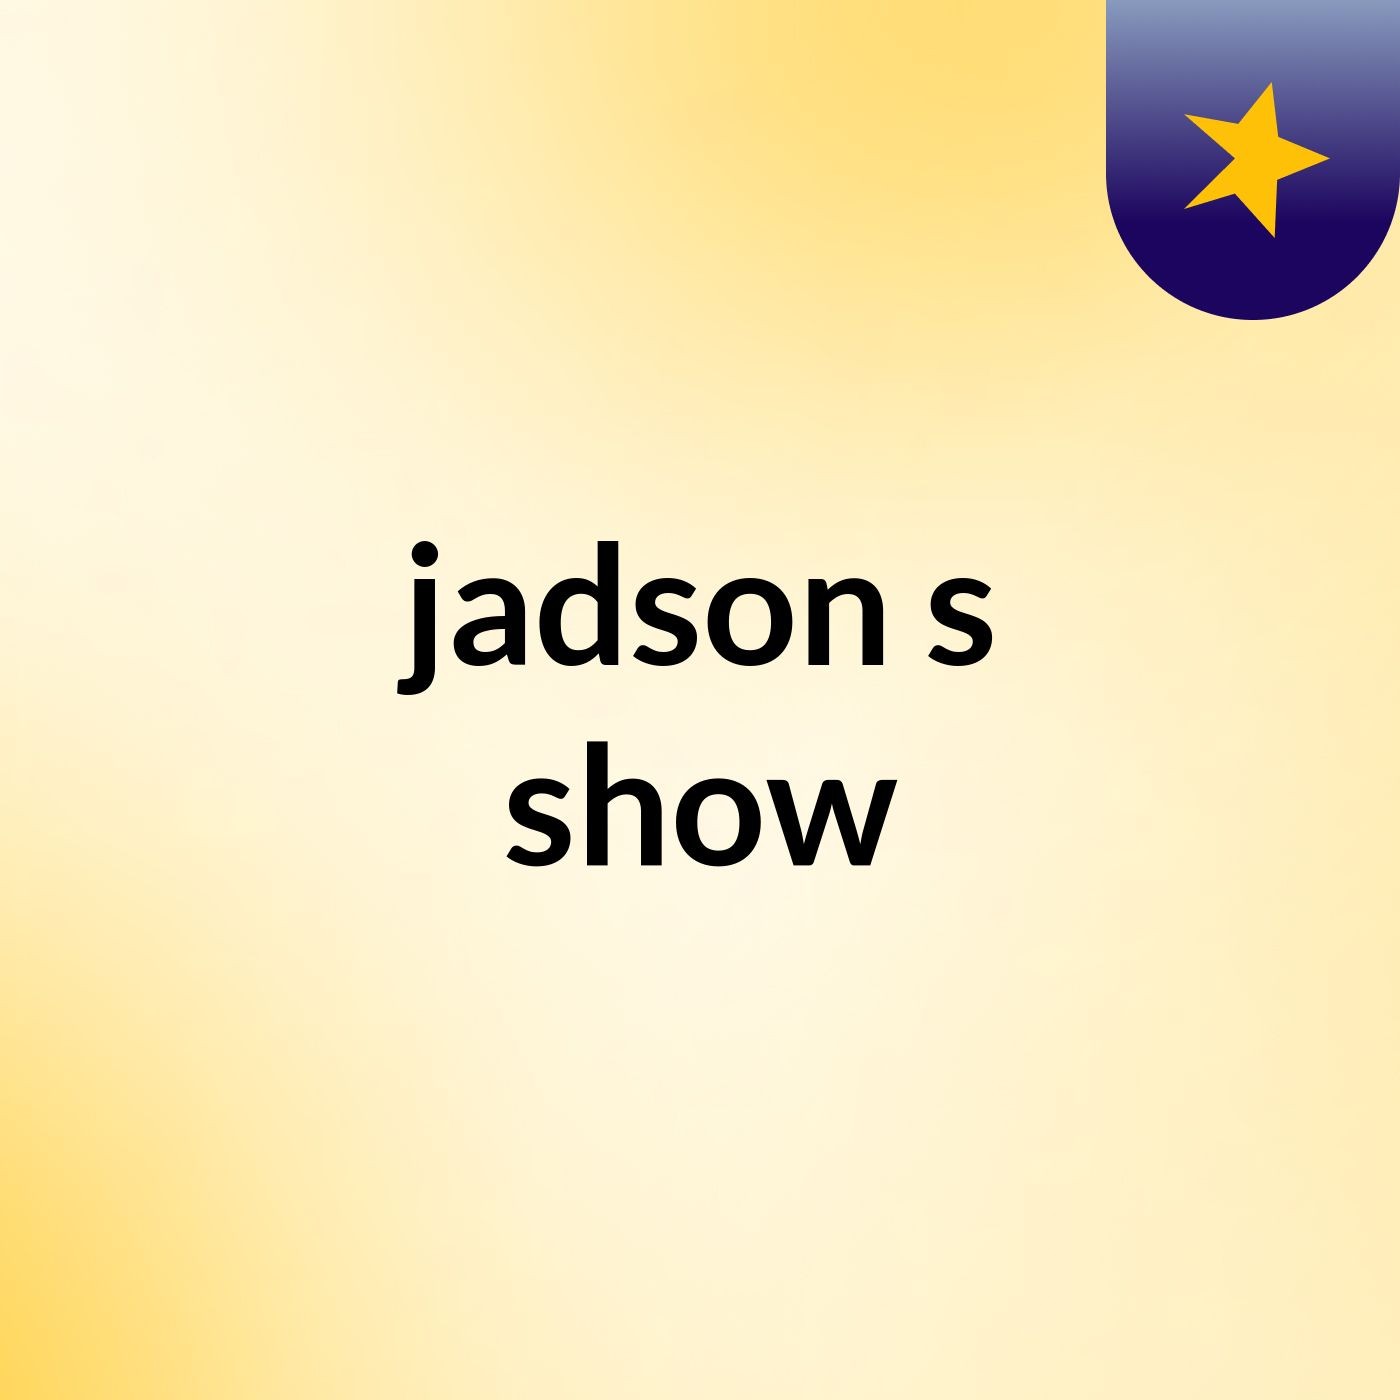 jadson's show